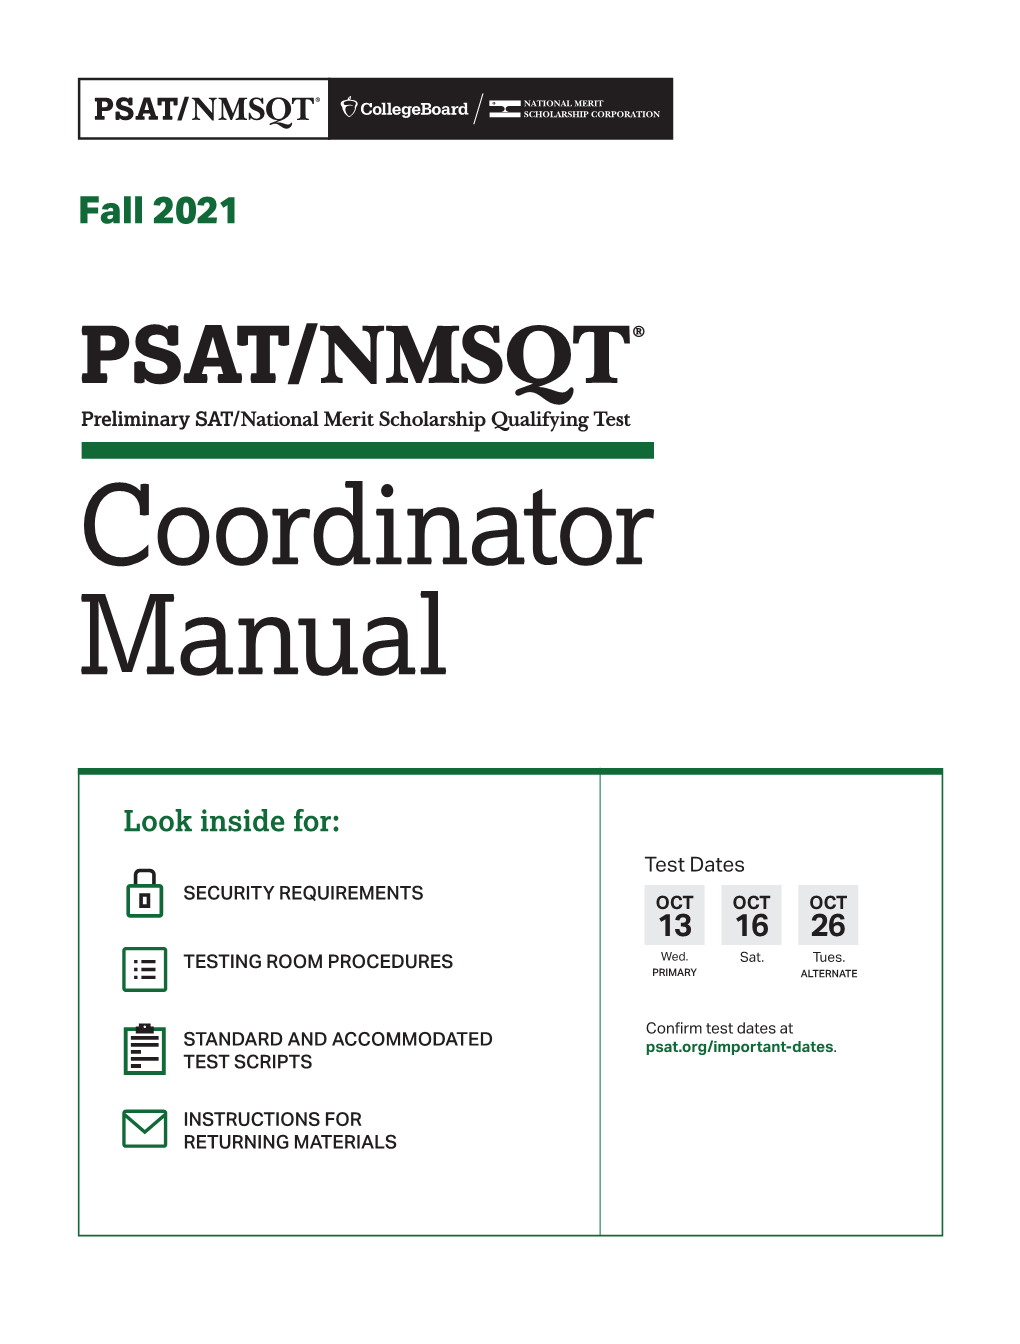 PSAT/NMSQT® Coordinator Manual